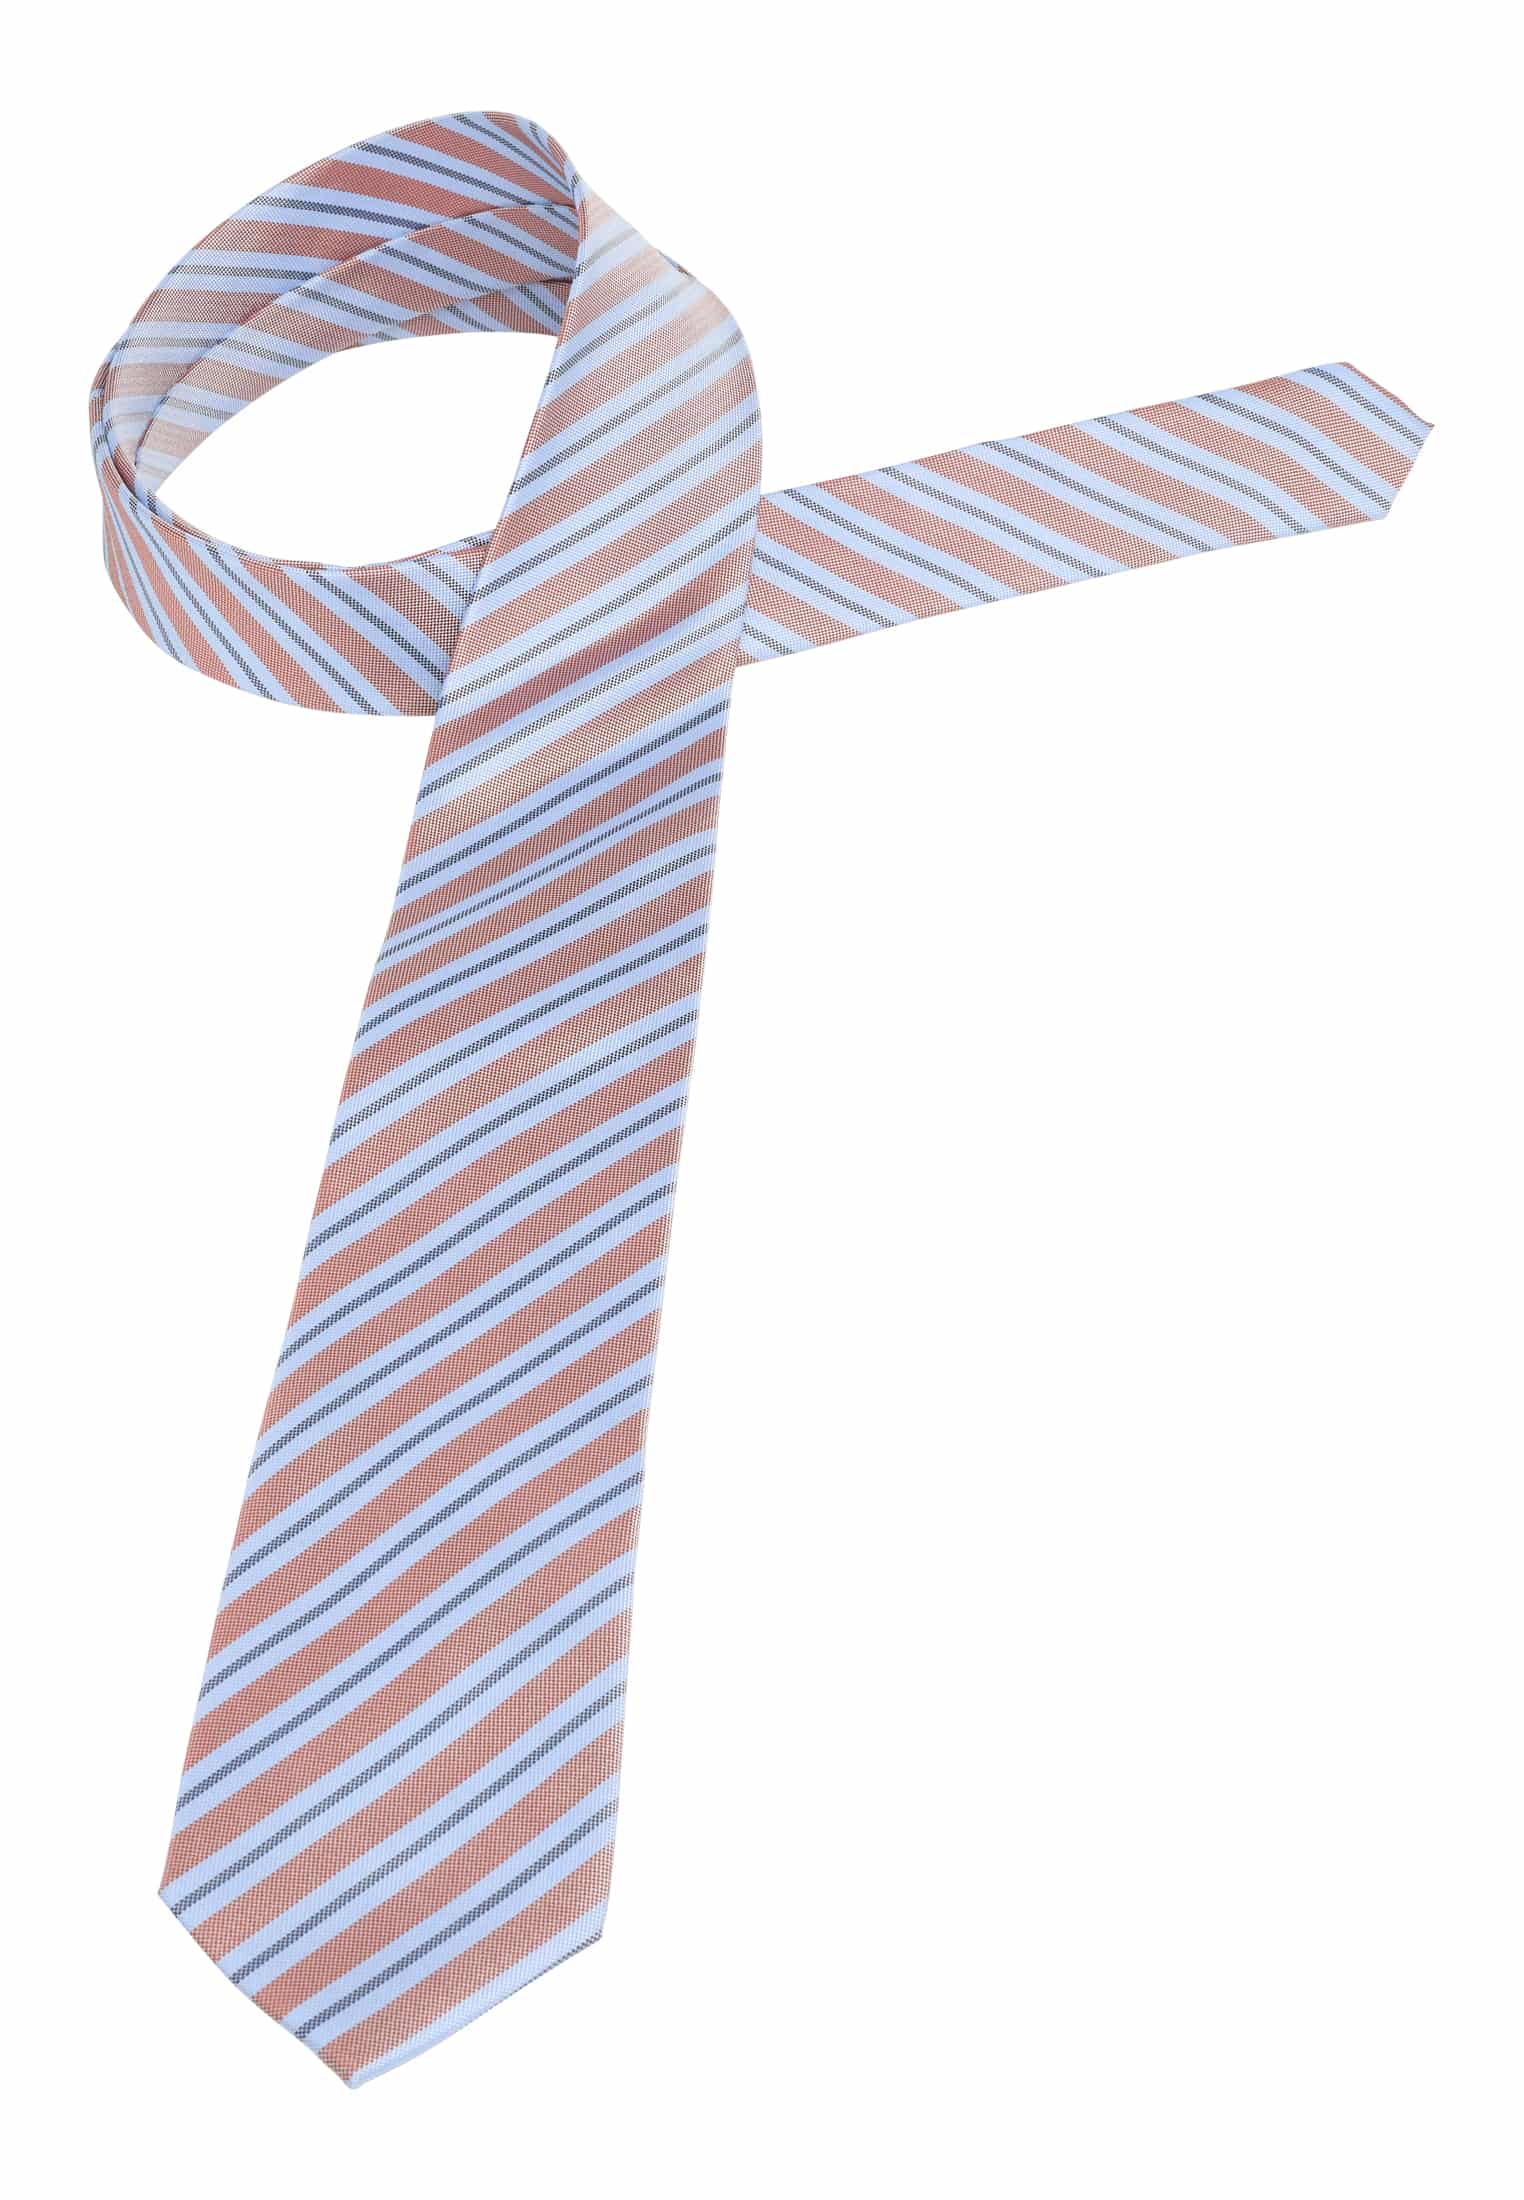 Krawatte in hellblau/orange | | 142 | 1AC02006-81-33-142 hellblau/orange gemustert